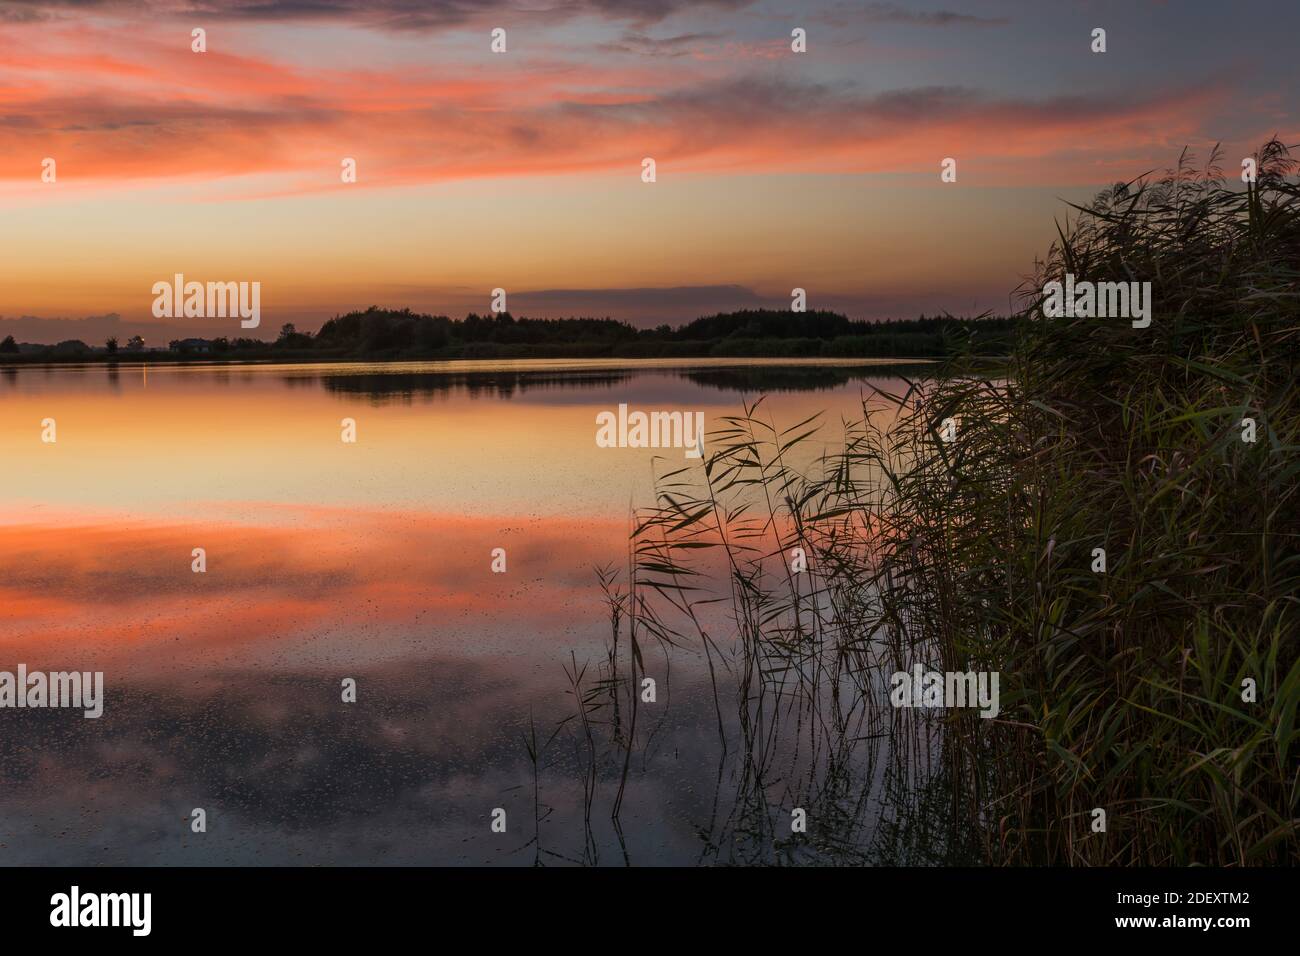 Nubes de colores, imagen de espejo en un lago con cañas, vista de la noche de verano, Stankow, Polonia oriental Foto de stock